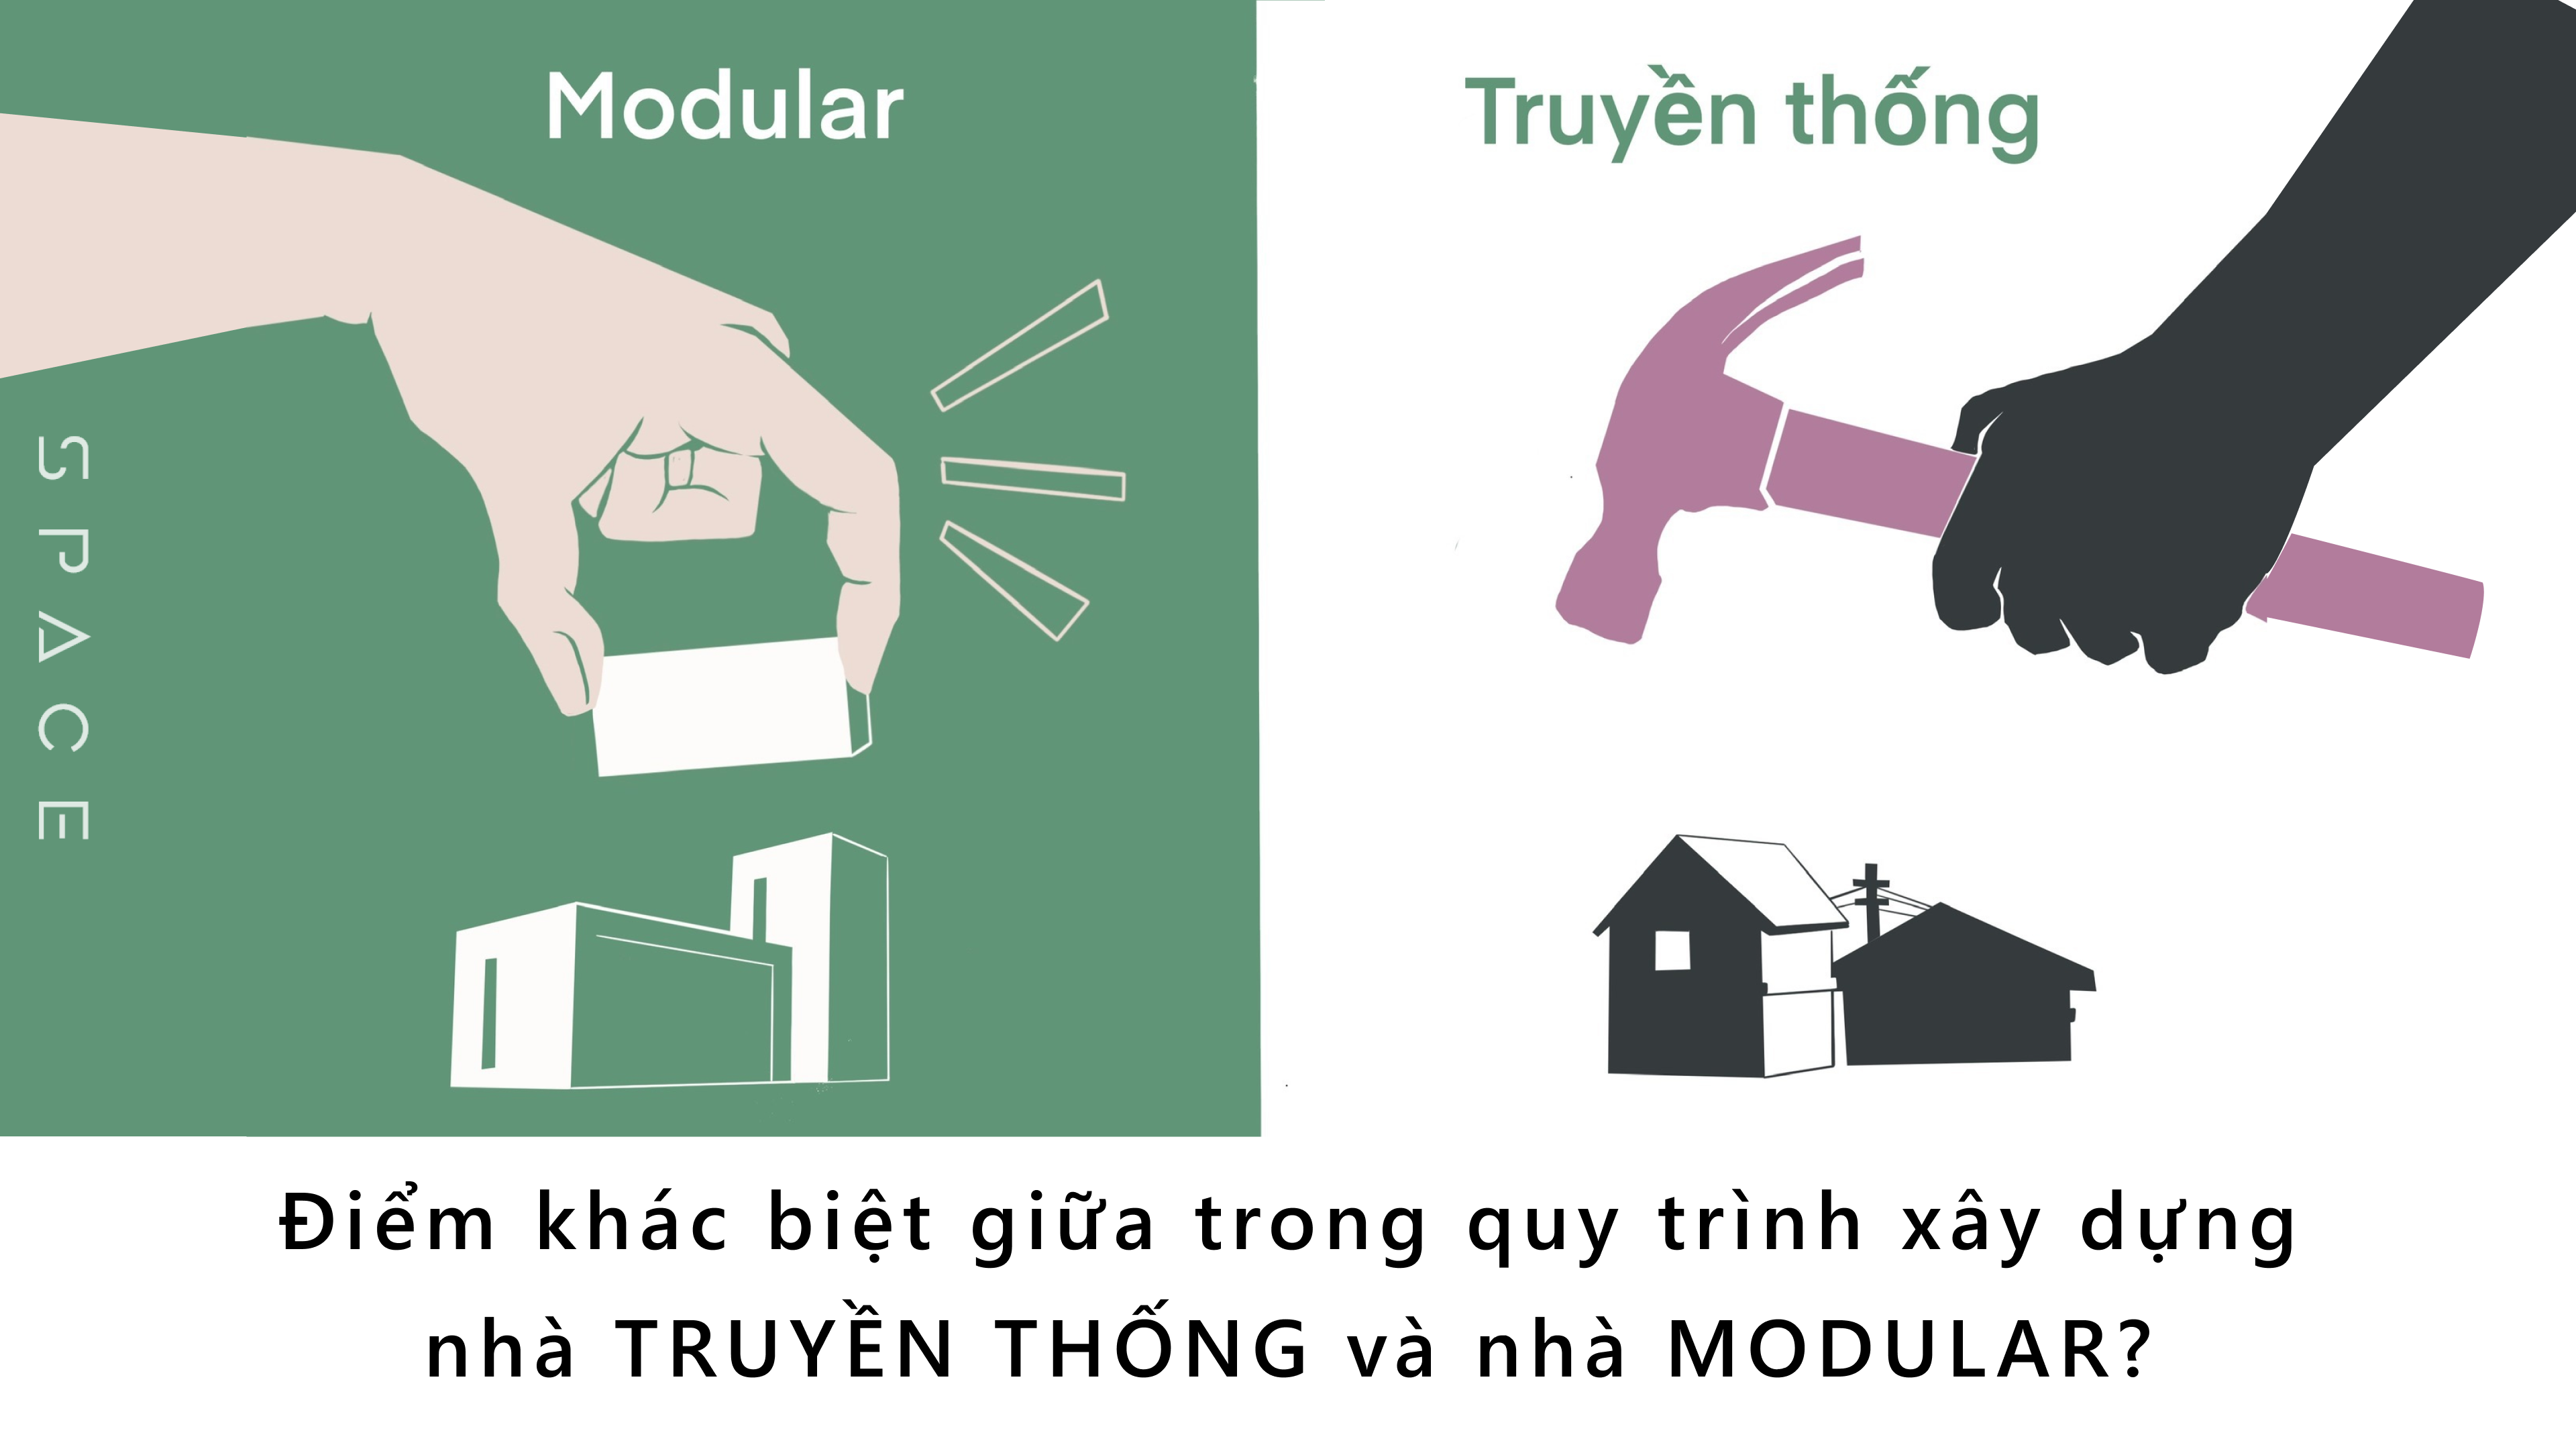 Sự khác biệt trong quy trình xây dựng giữa nhà truyền thống và nhà modular S P A C E